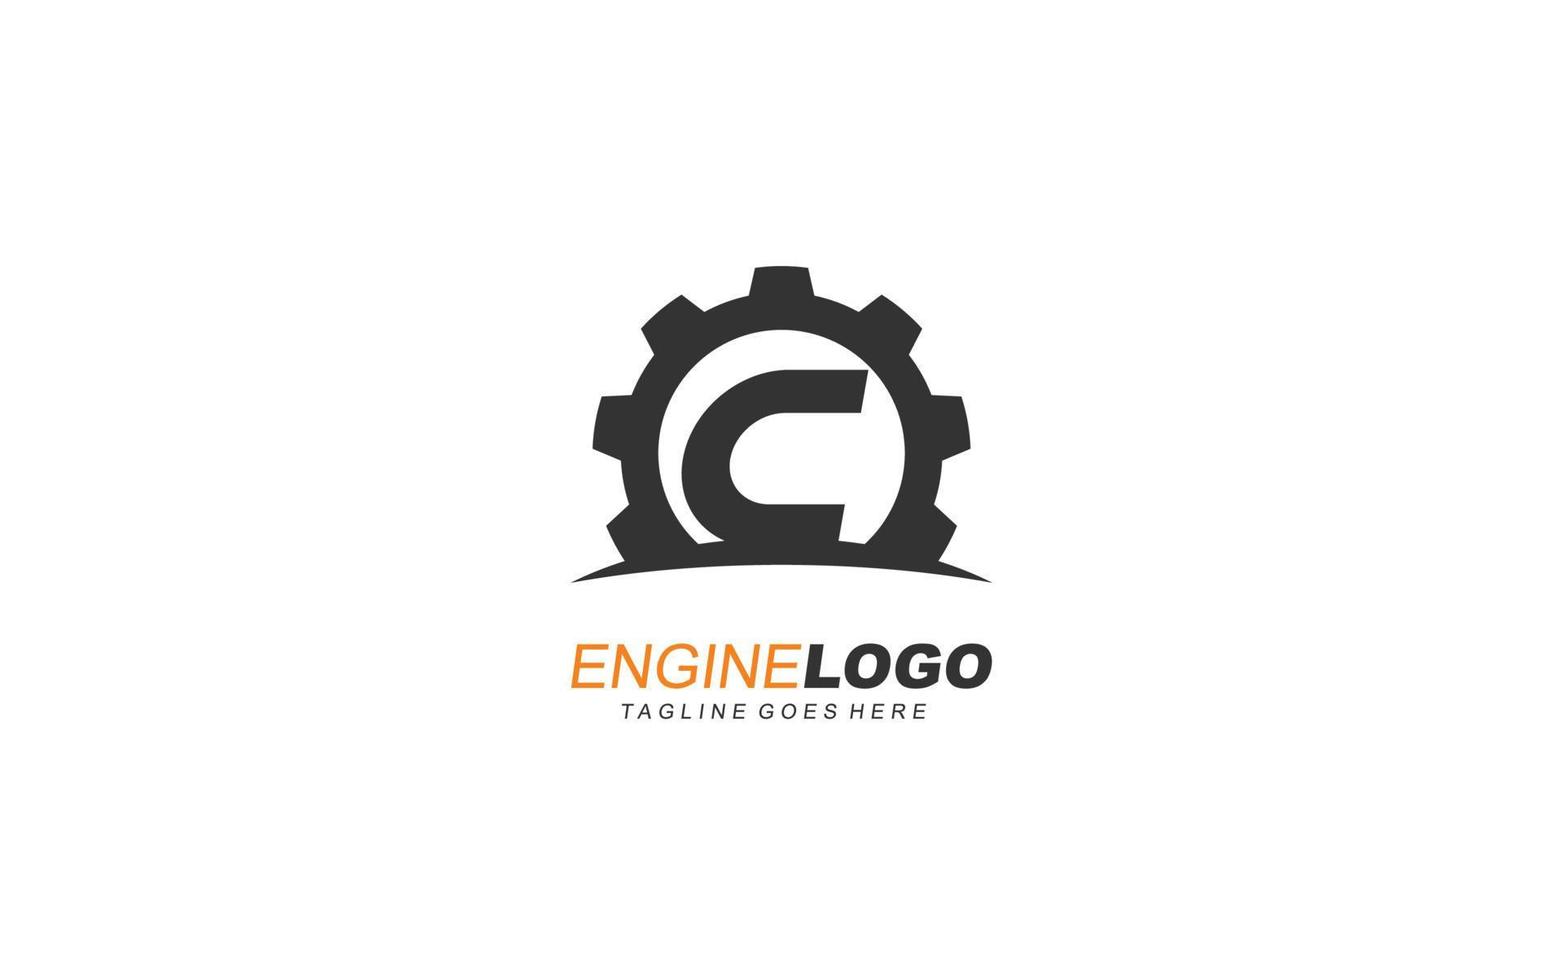 c logo uitrusting voor identiteit. industrieel sjabloon vector illustratie voor uw merk.